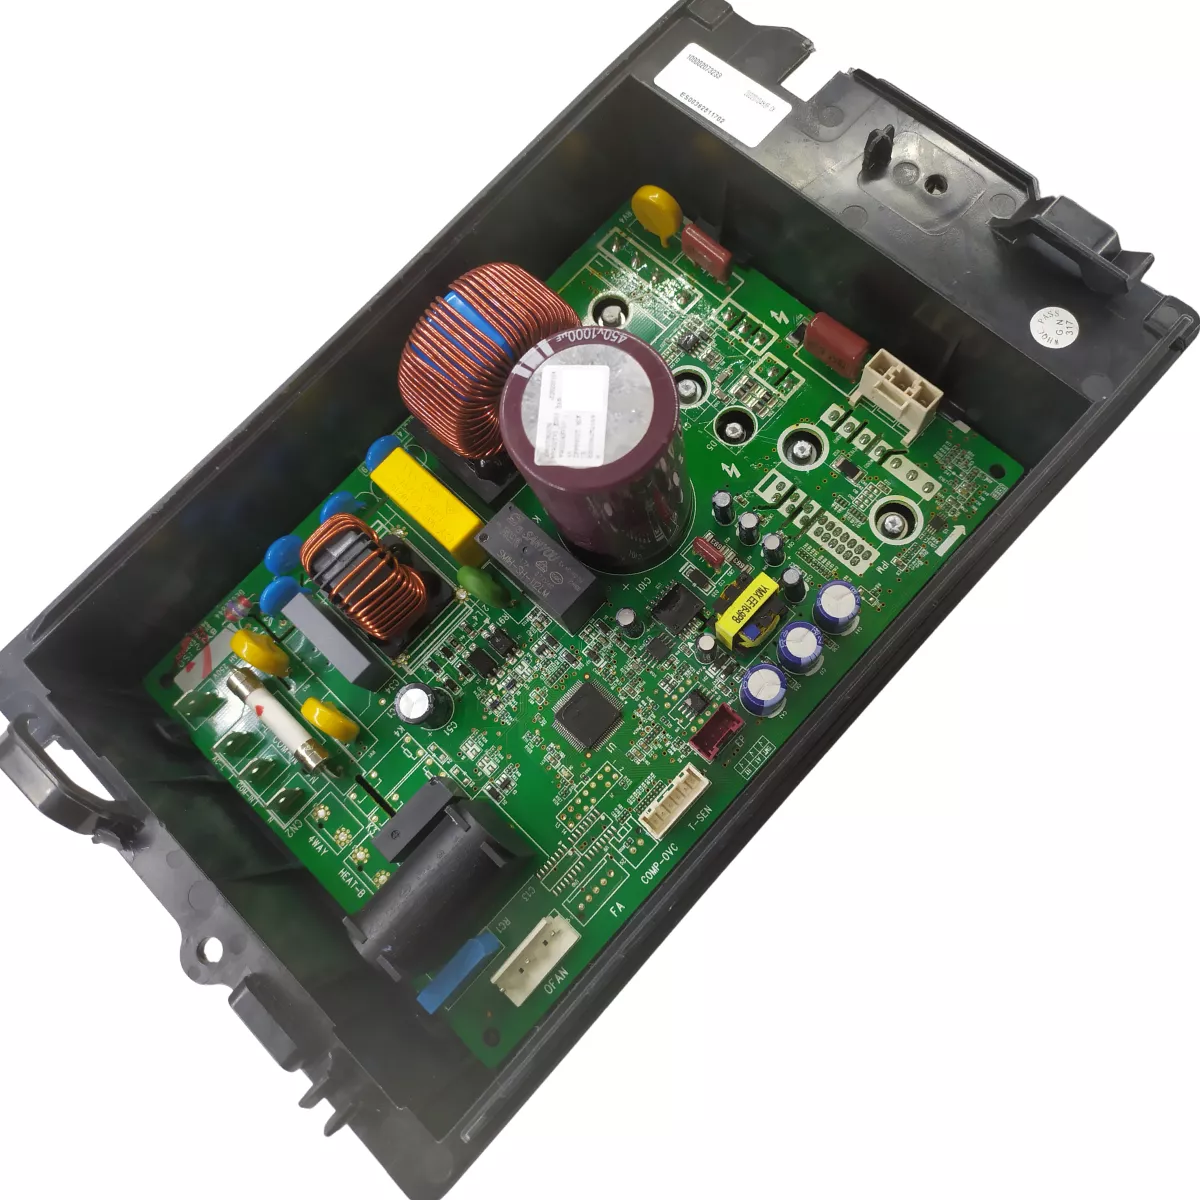 Terceira imagem para pesquisa de placa da condensadora inverter electrolux